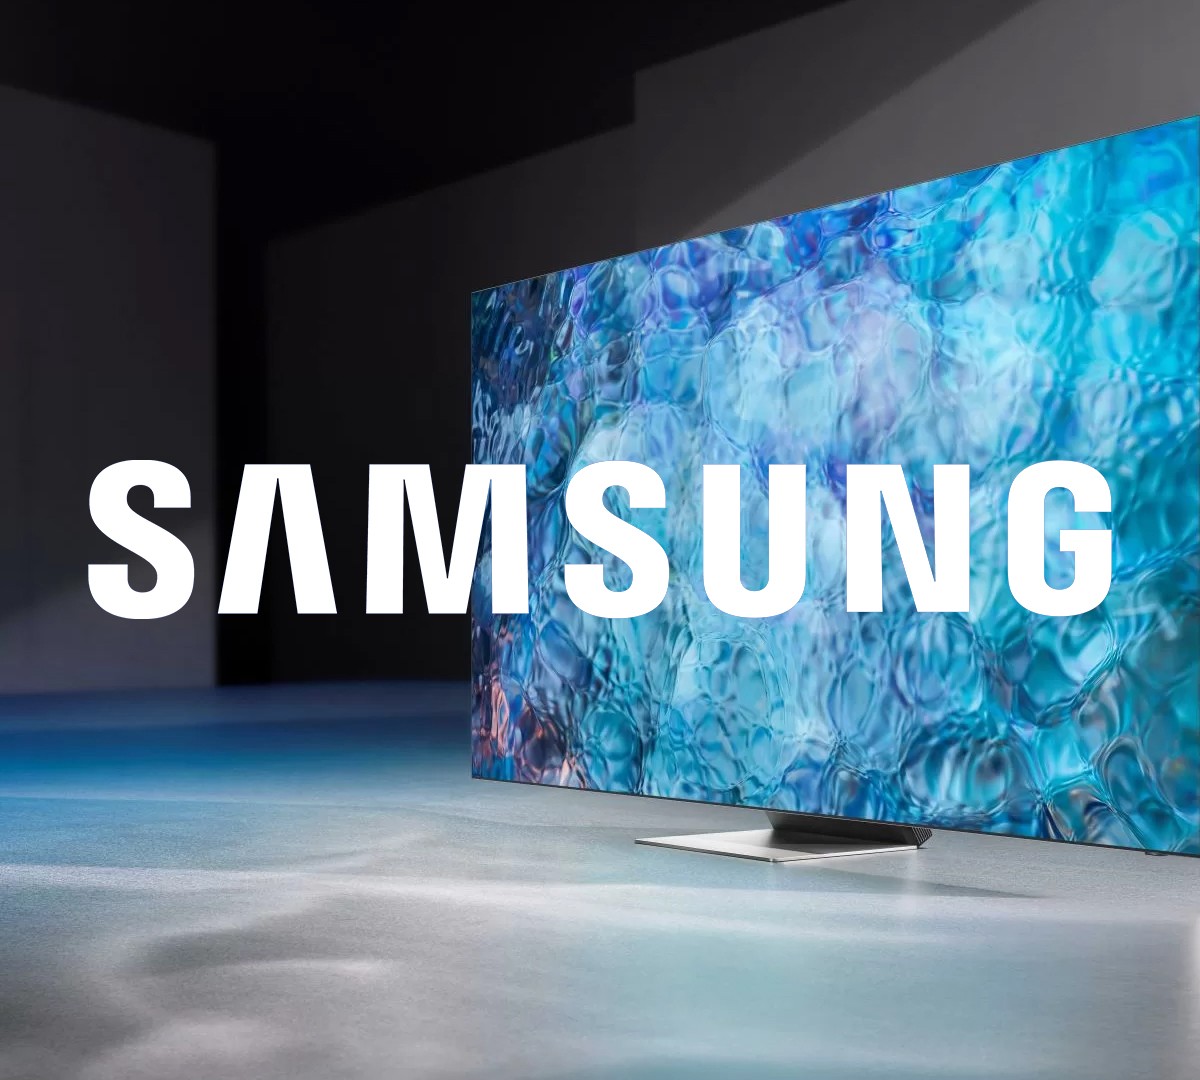 Samsung pretende lançar sua própria plataforma de jogos em nuvem